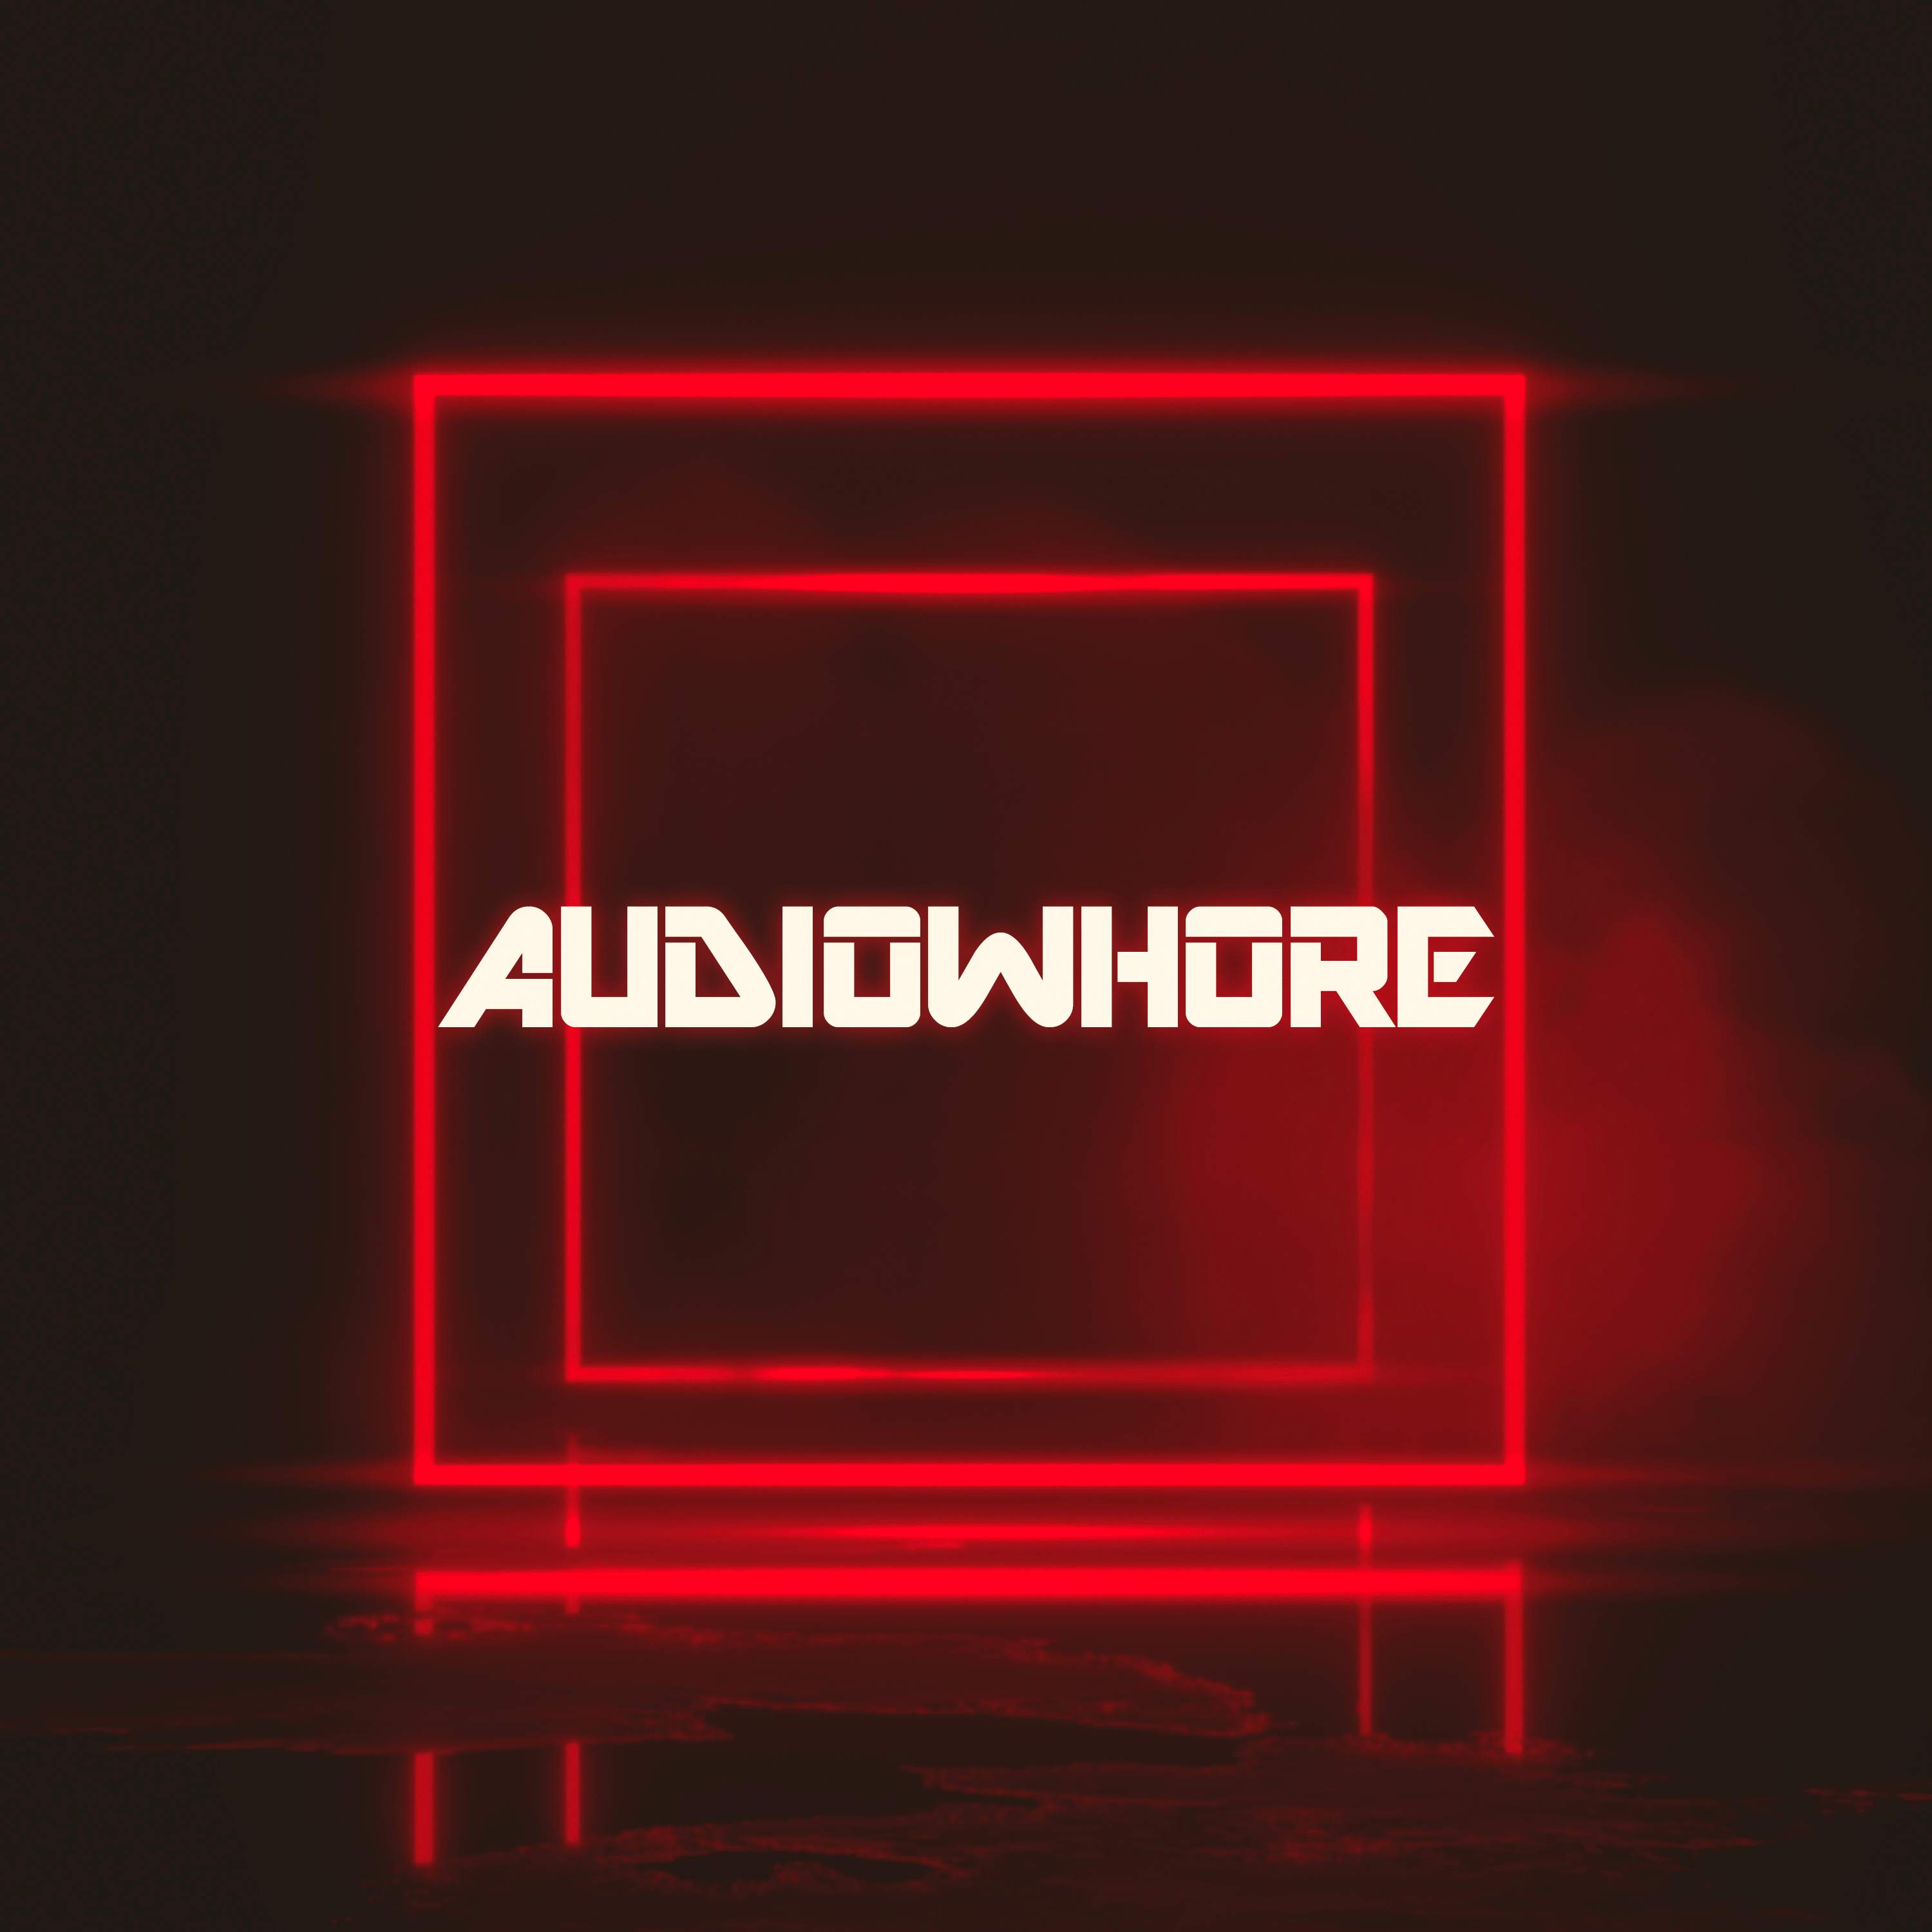 Audiowhore Boxing Day - Página frontal